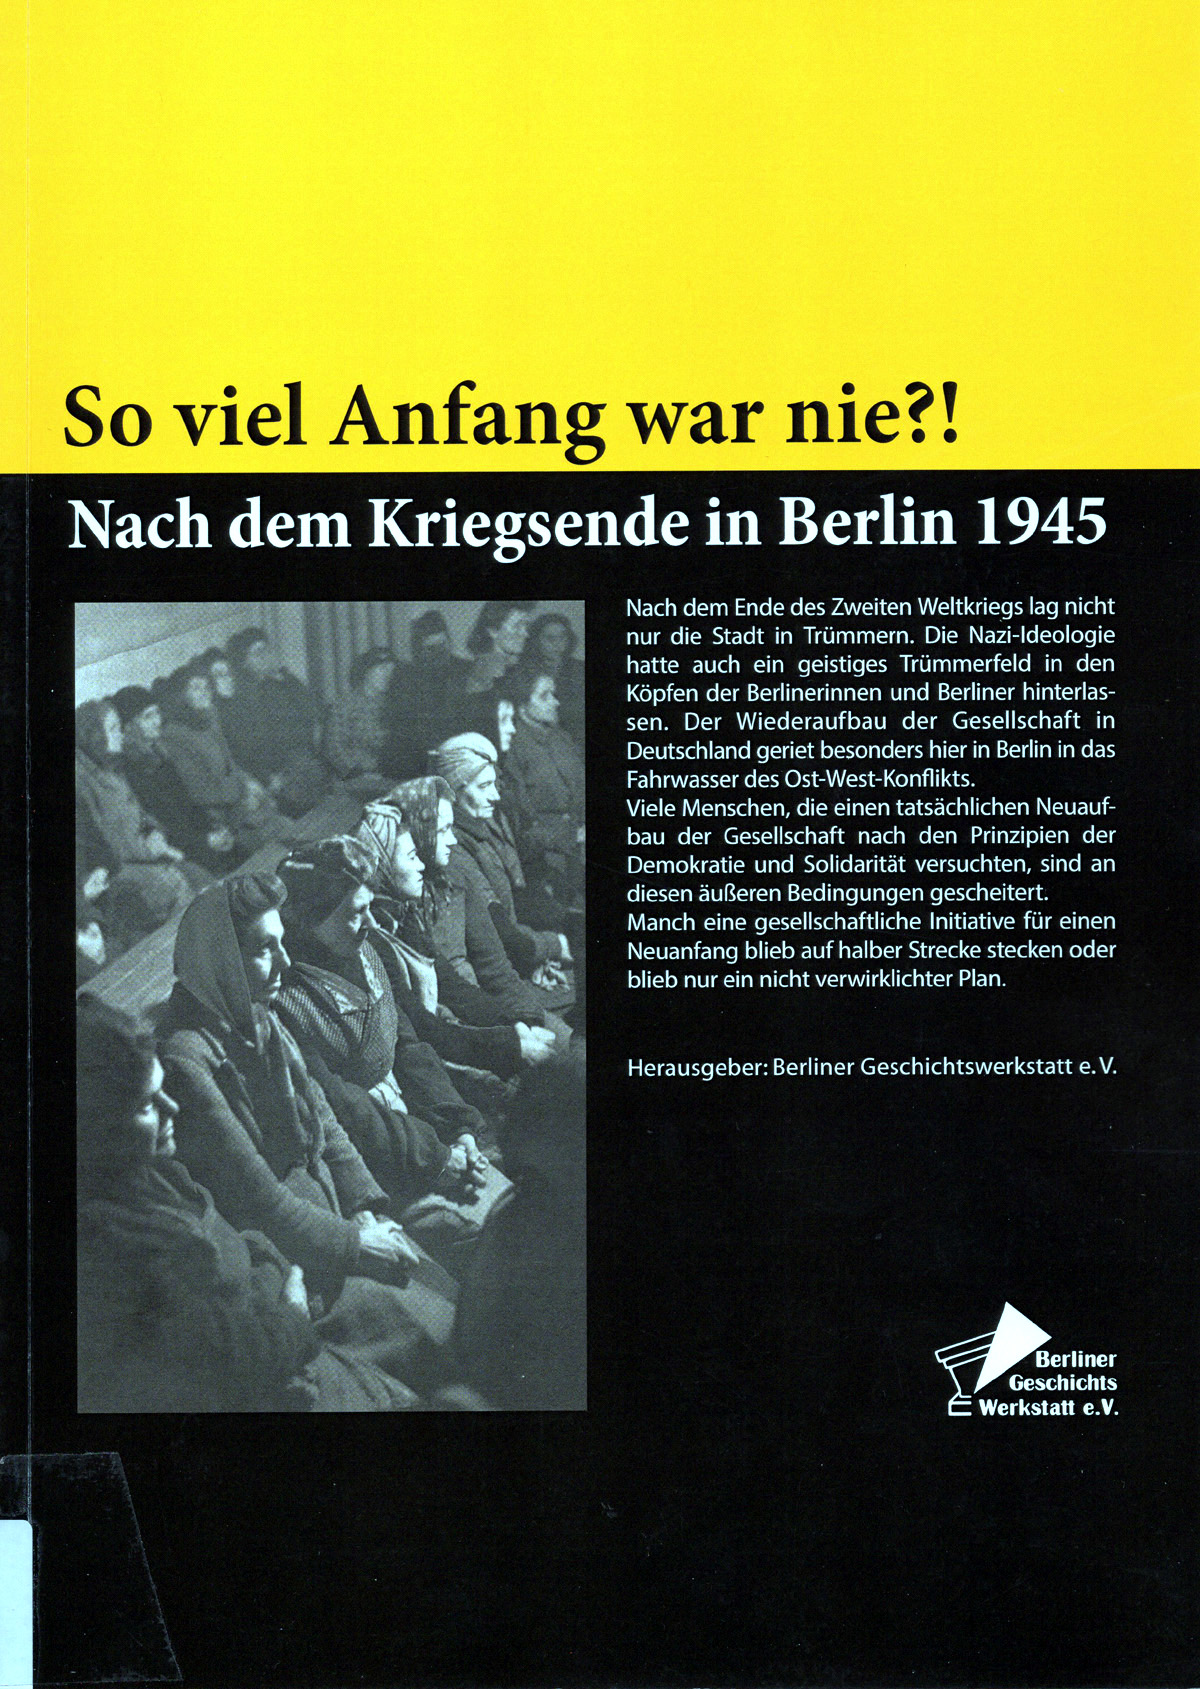 So viel Anfang war nie?! – Nach dem Kriegsende in Berlin 1945